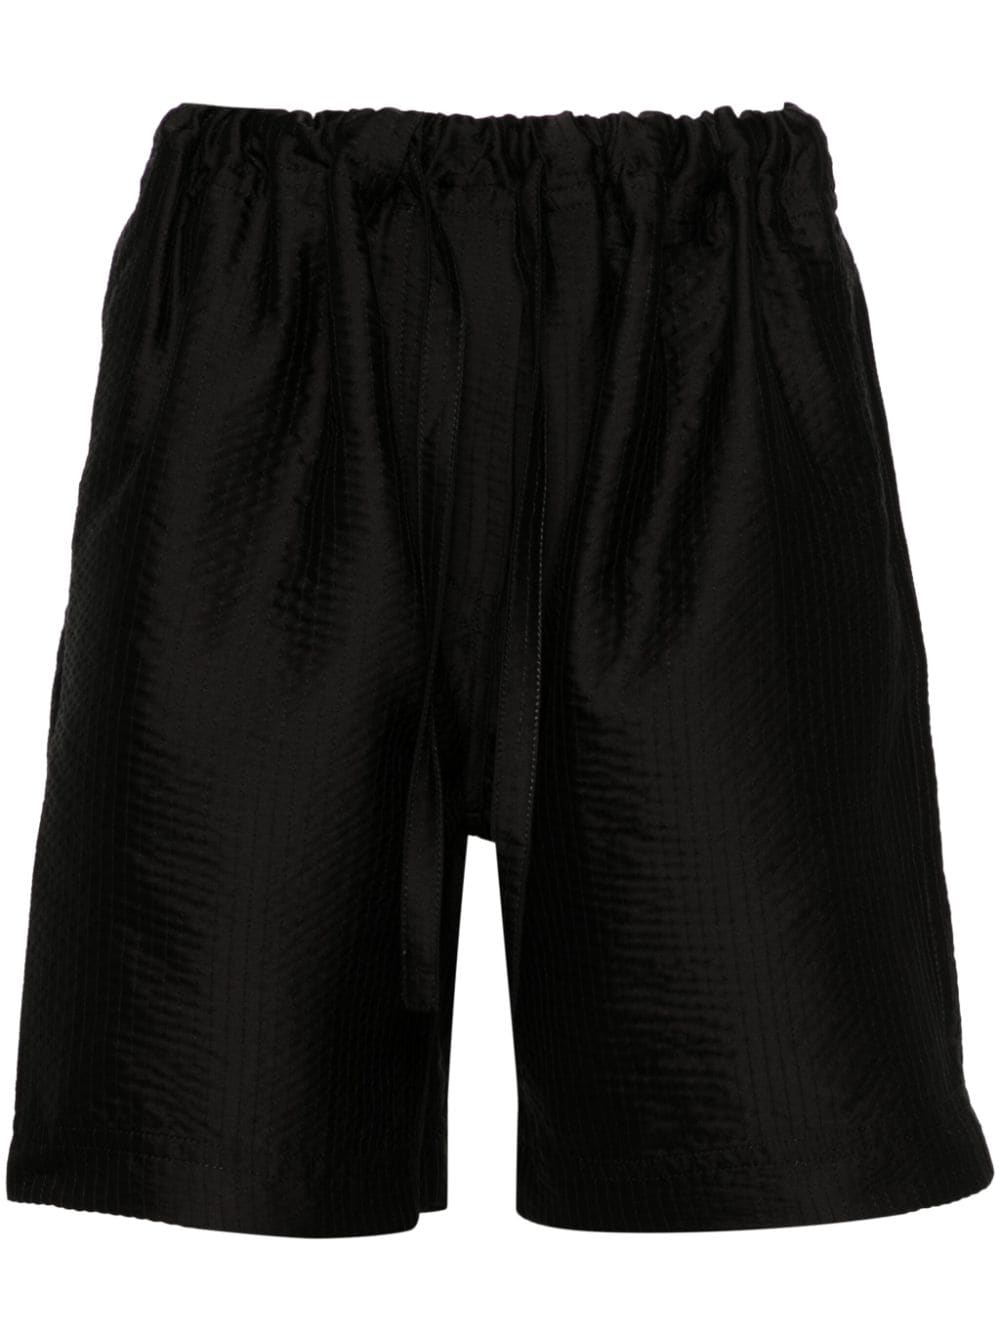 Christian Wijnants Pele Twill Shorts In Black